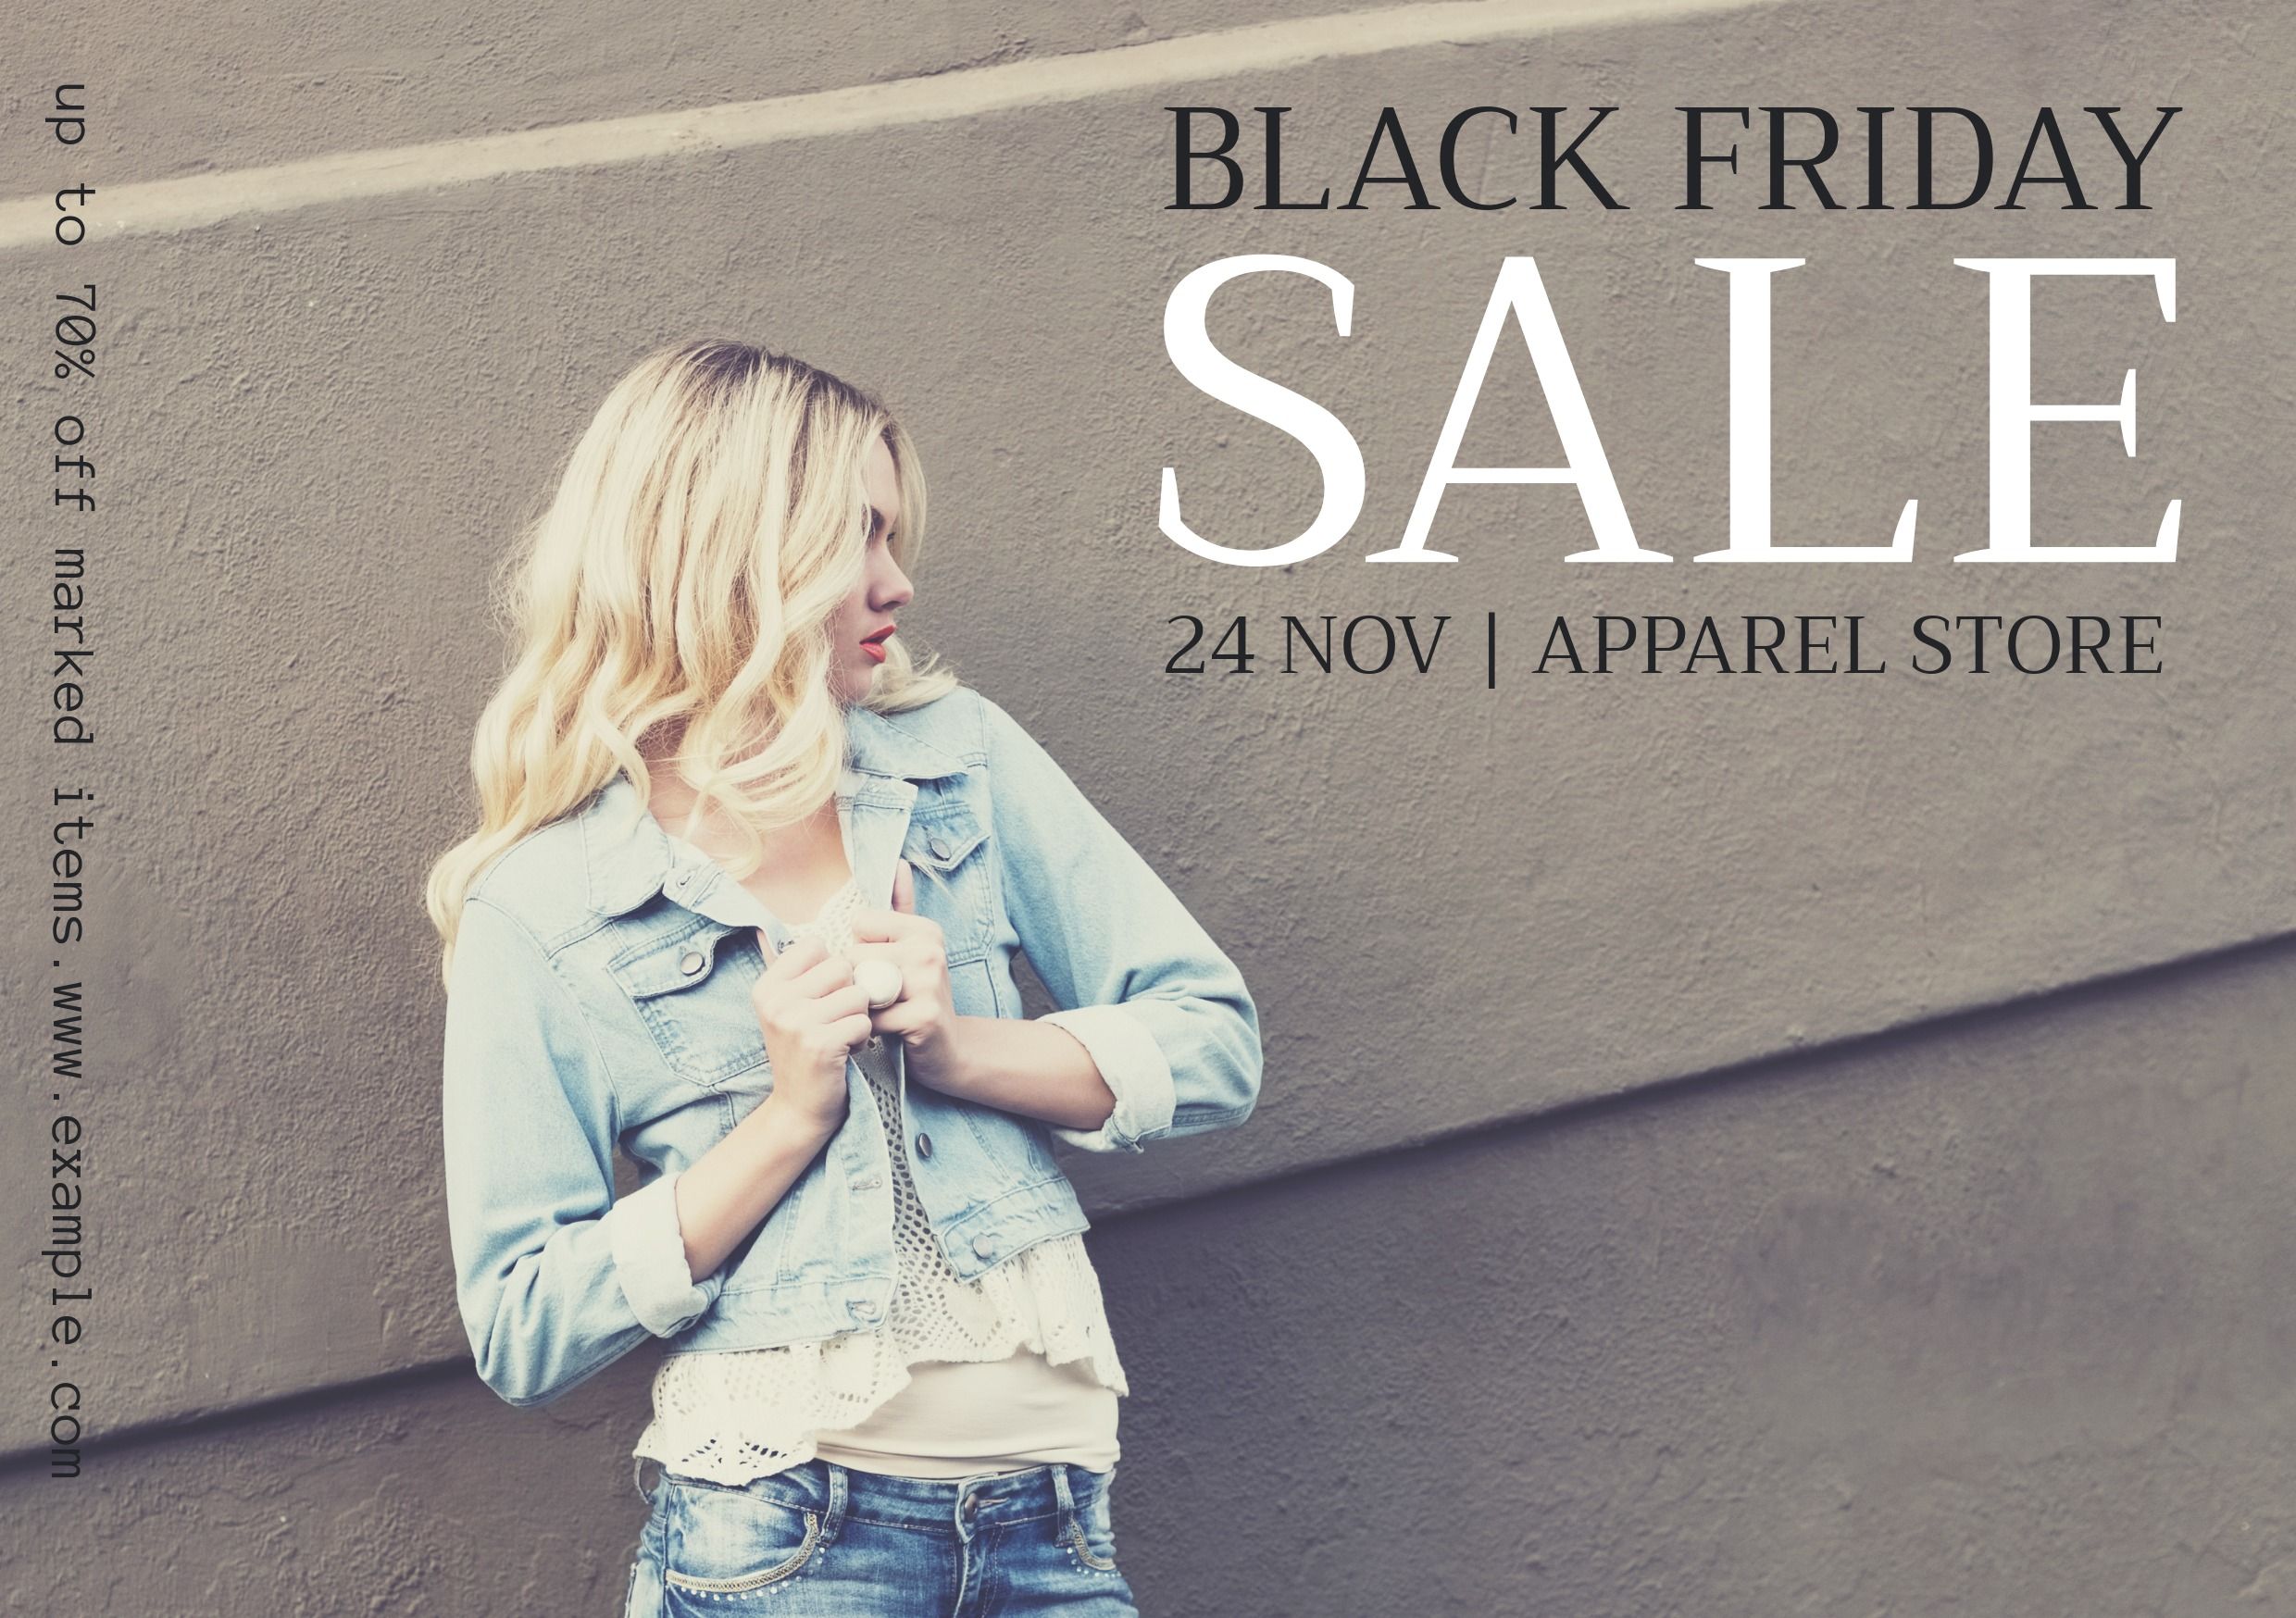 femme blonde vente vendredi noir - 50 designs sympas que vous pouvez facilement personnaliser - Image